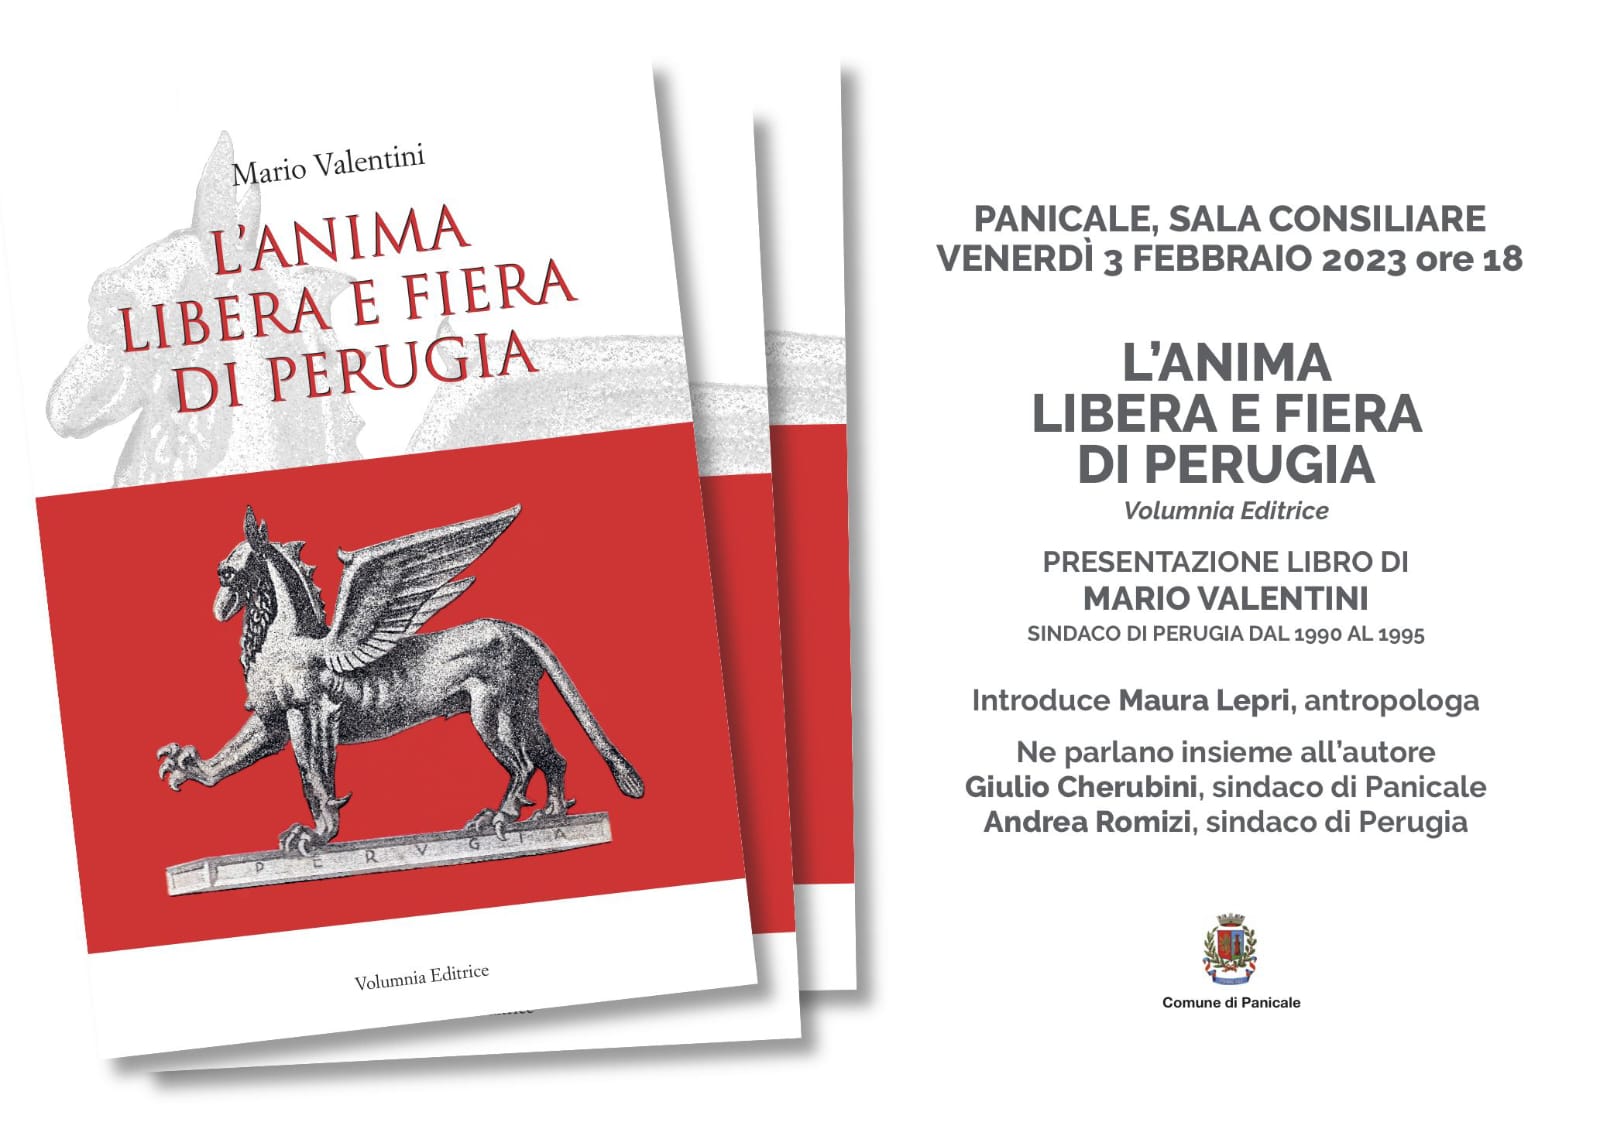 A Panicale presentazione de “L’anima libera e fiera di Perugia”